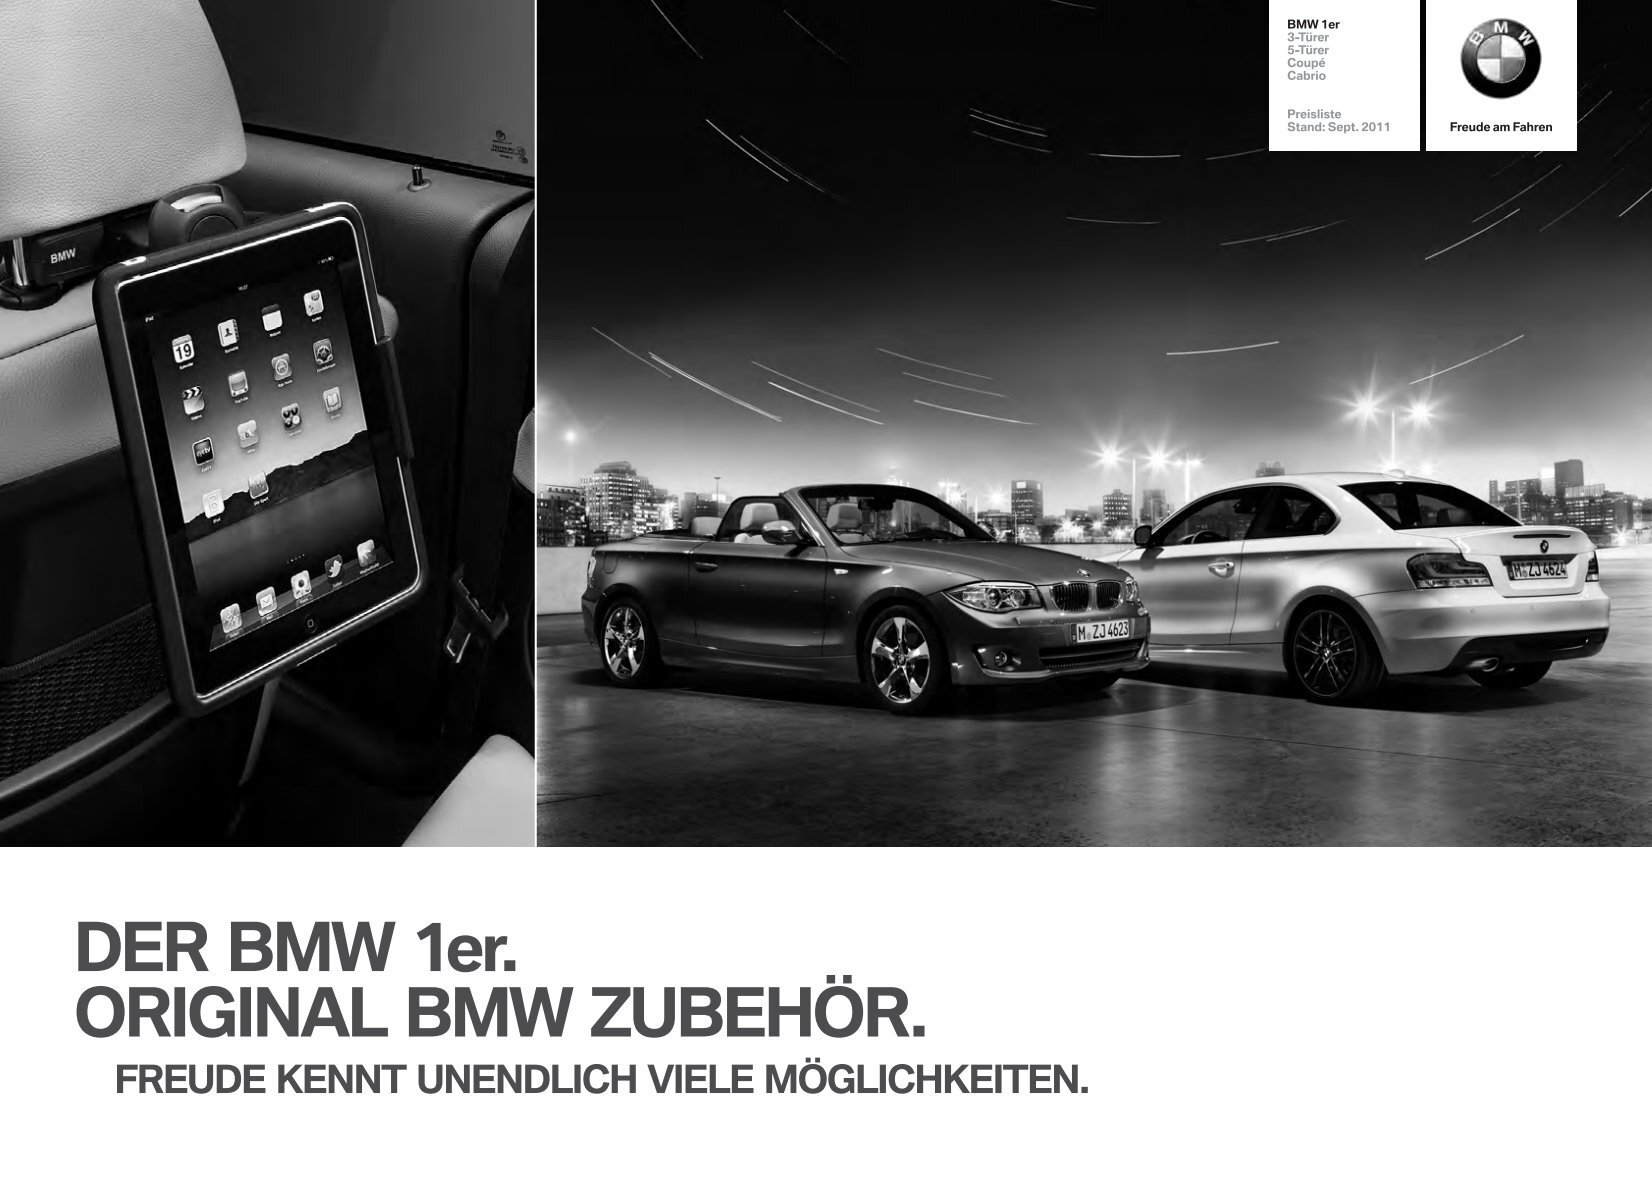 DER BMW 1er. ORIGINAL BMW ZUBEHÖR.